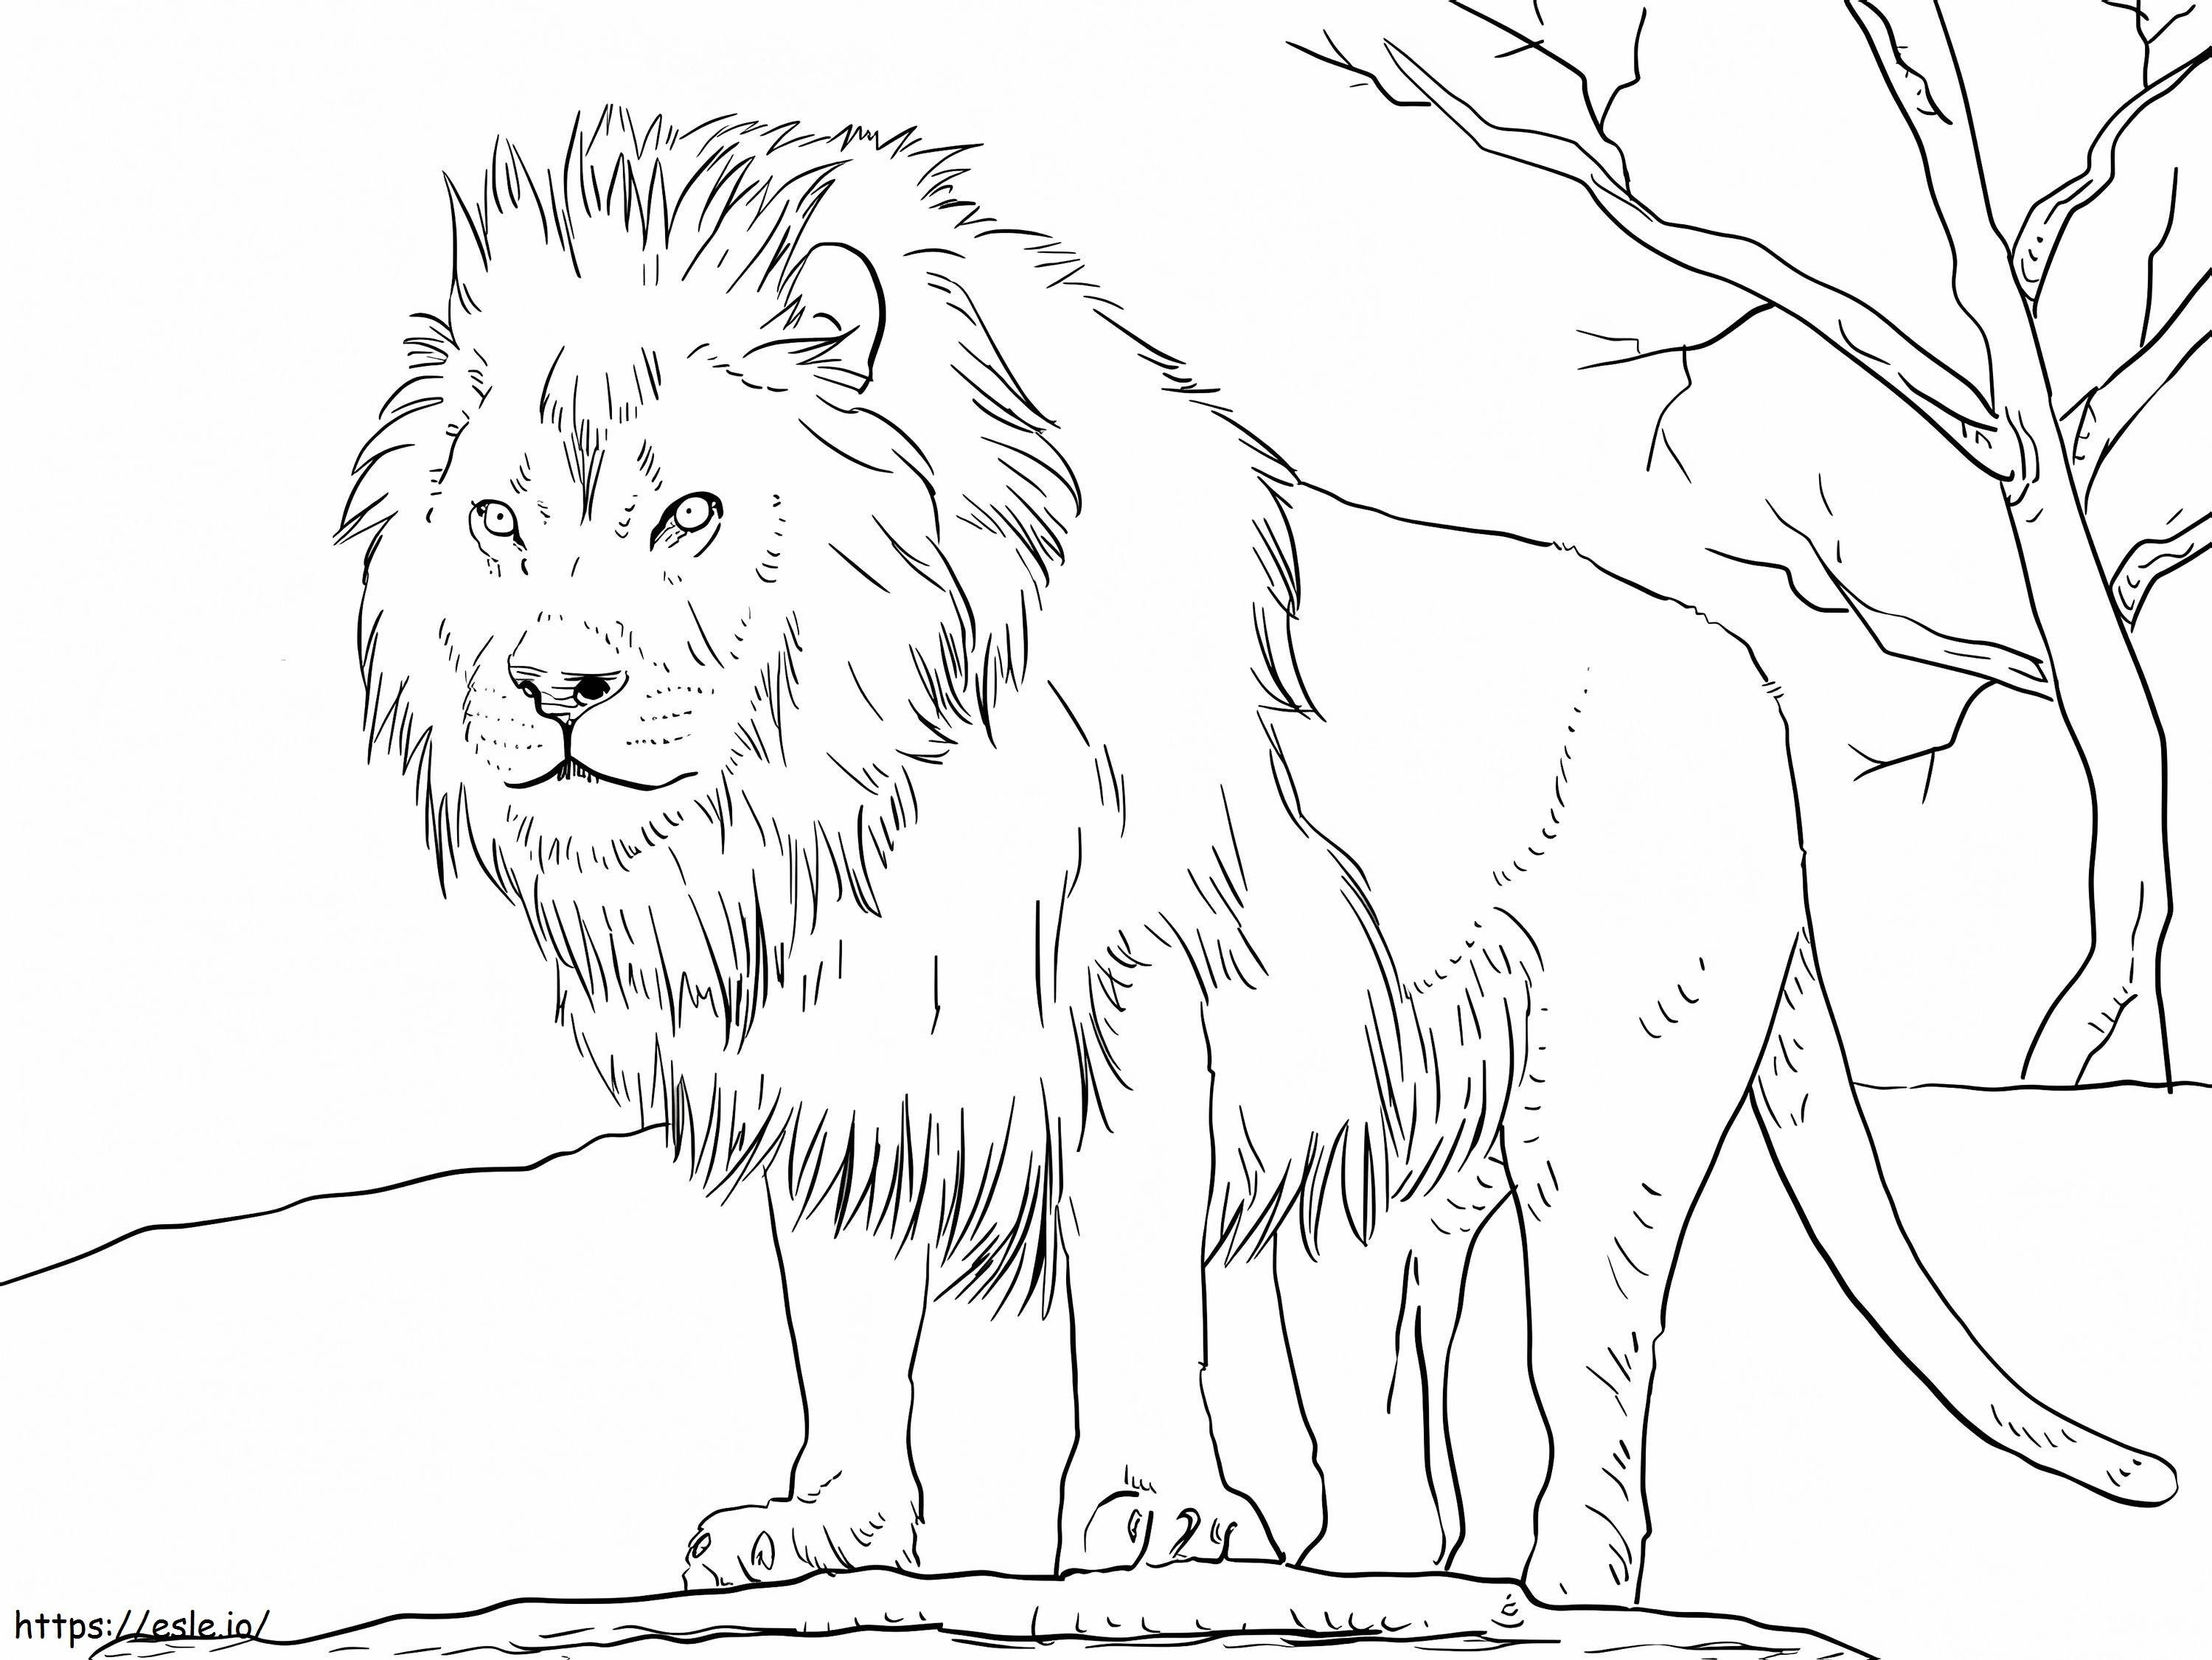 Leão Africano para colorir